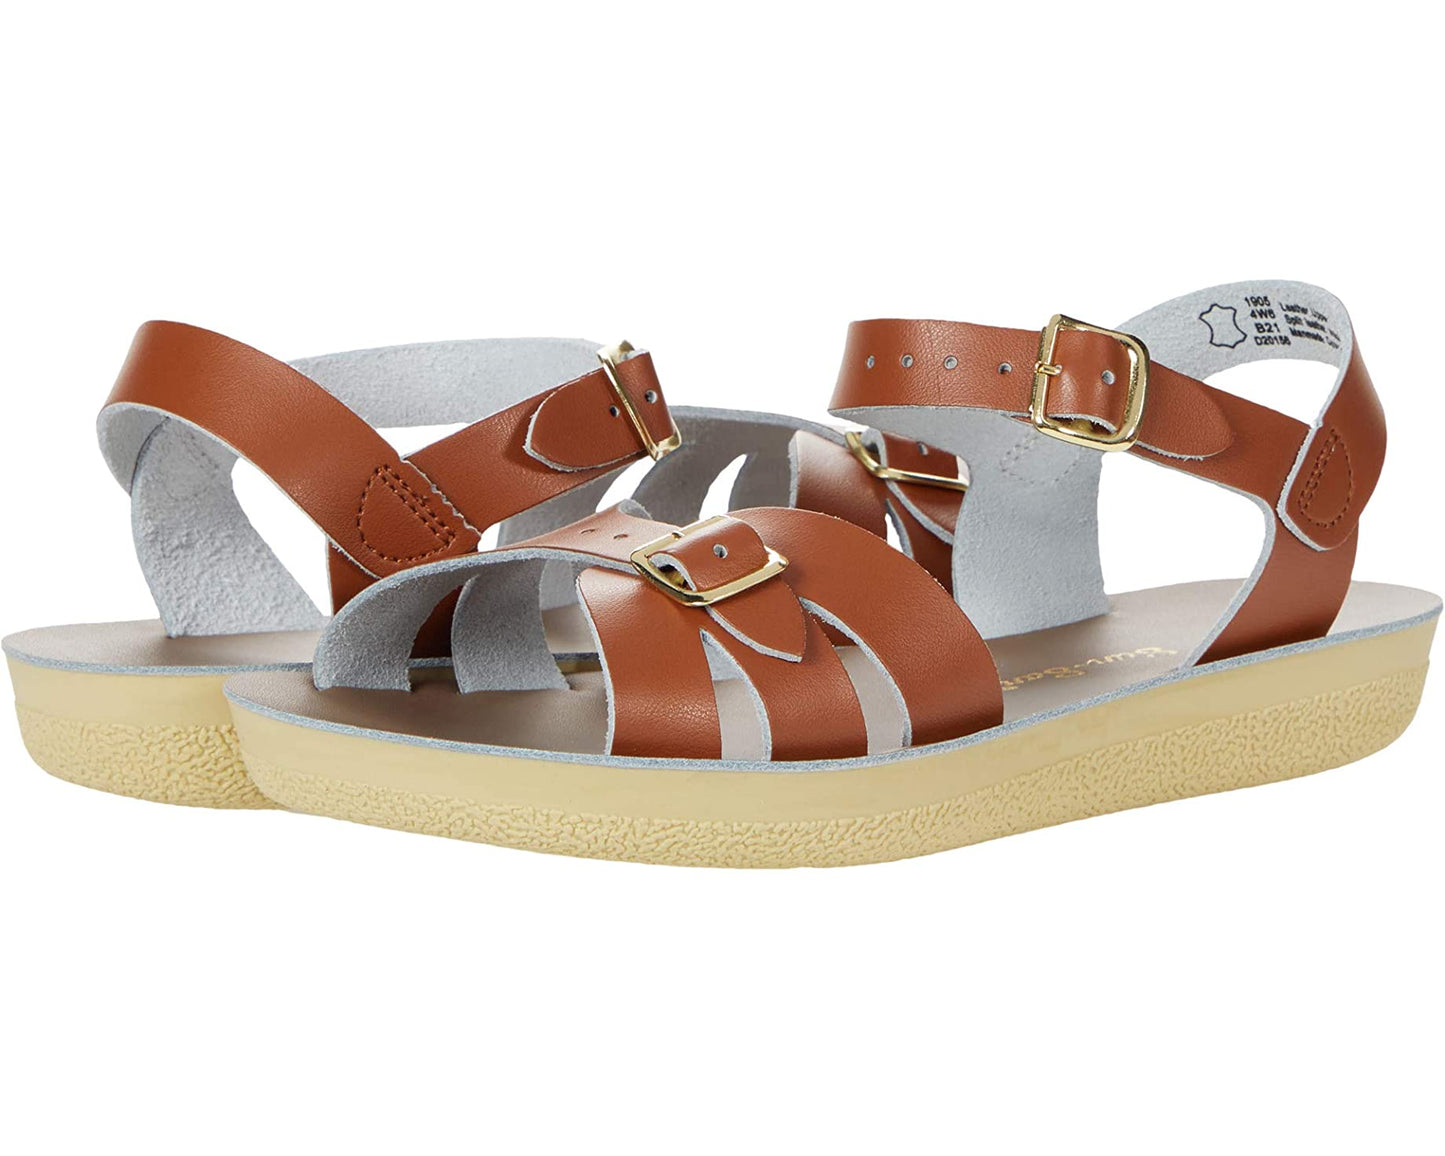 Boardwalk Adult Tan Sandals